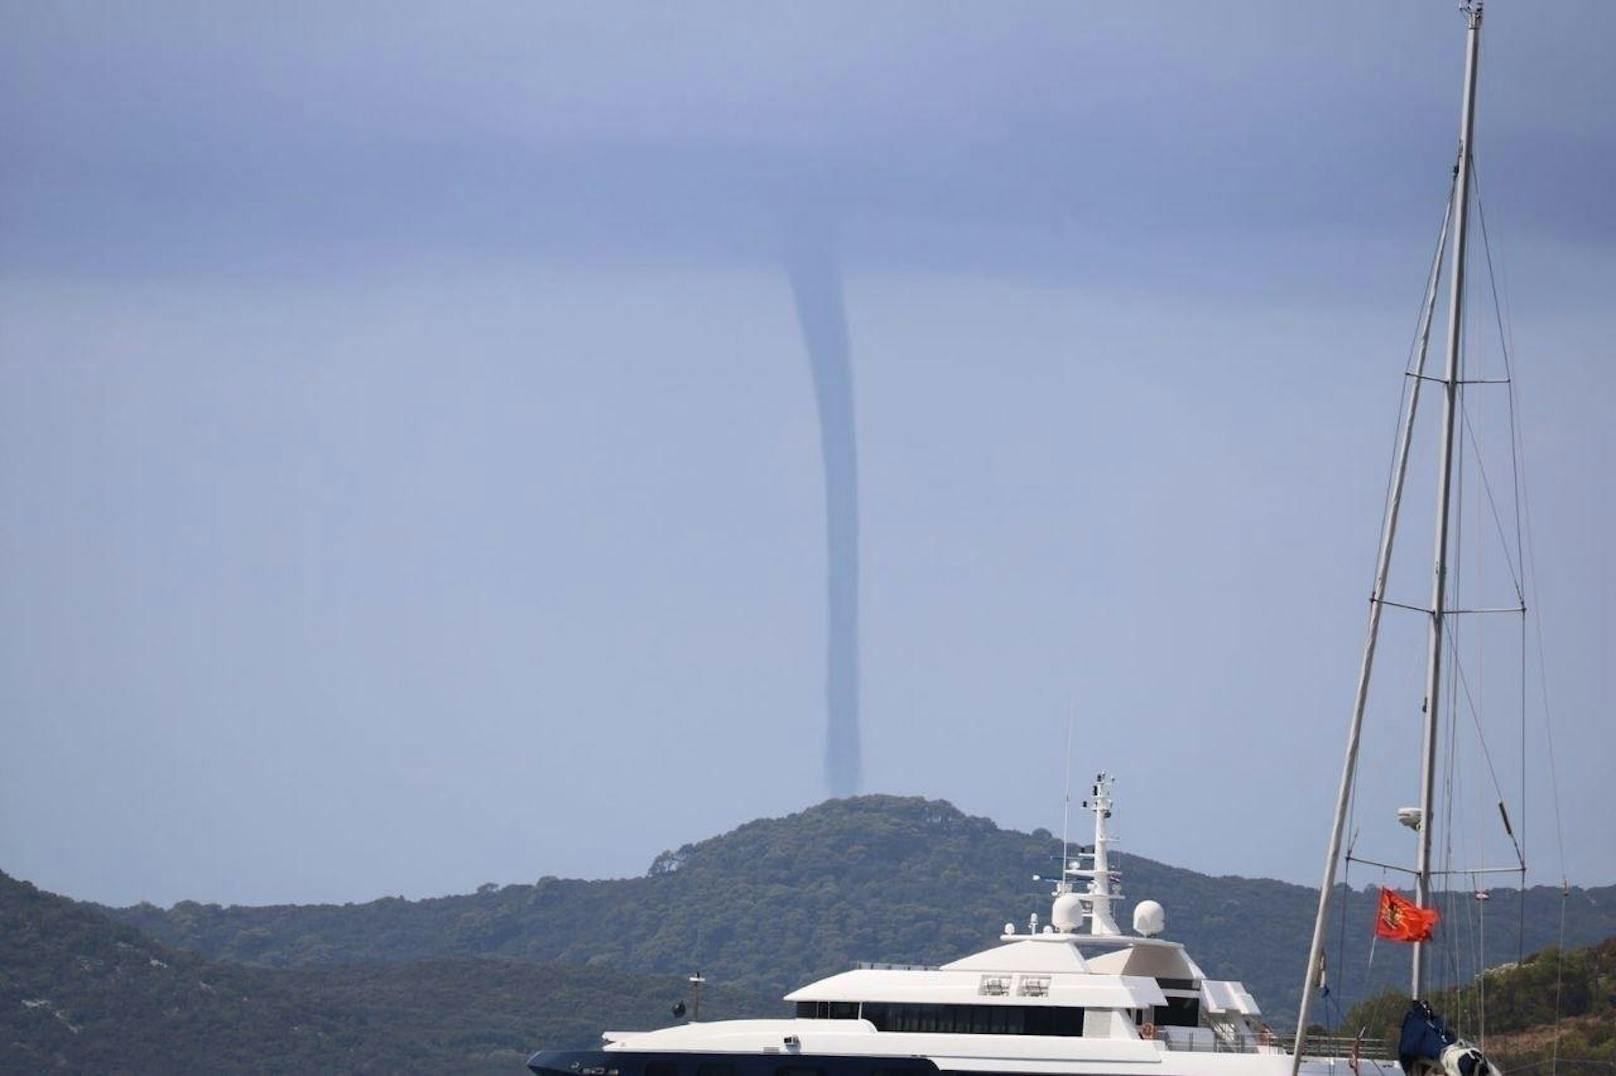 Am Samstag Vormittag sichteten Touristen in der Stadt Slano einen Doppel-Tornado.